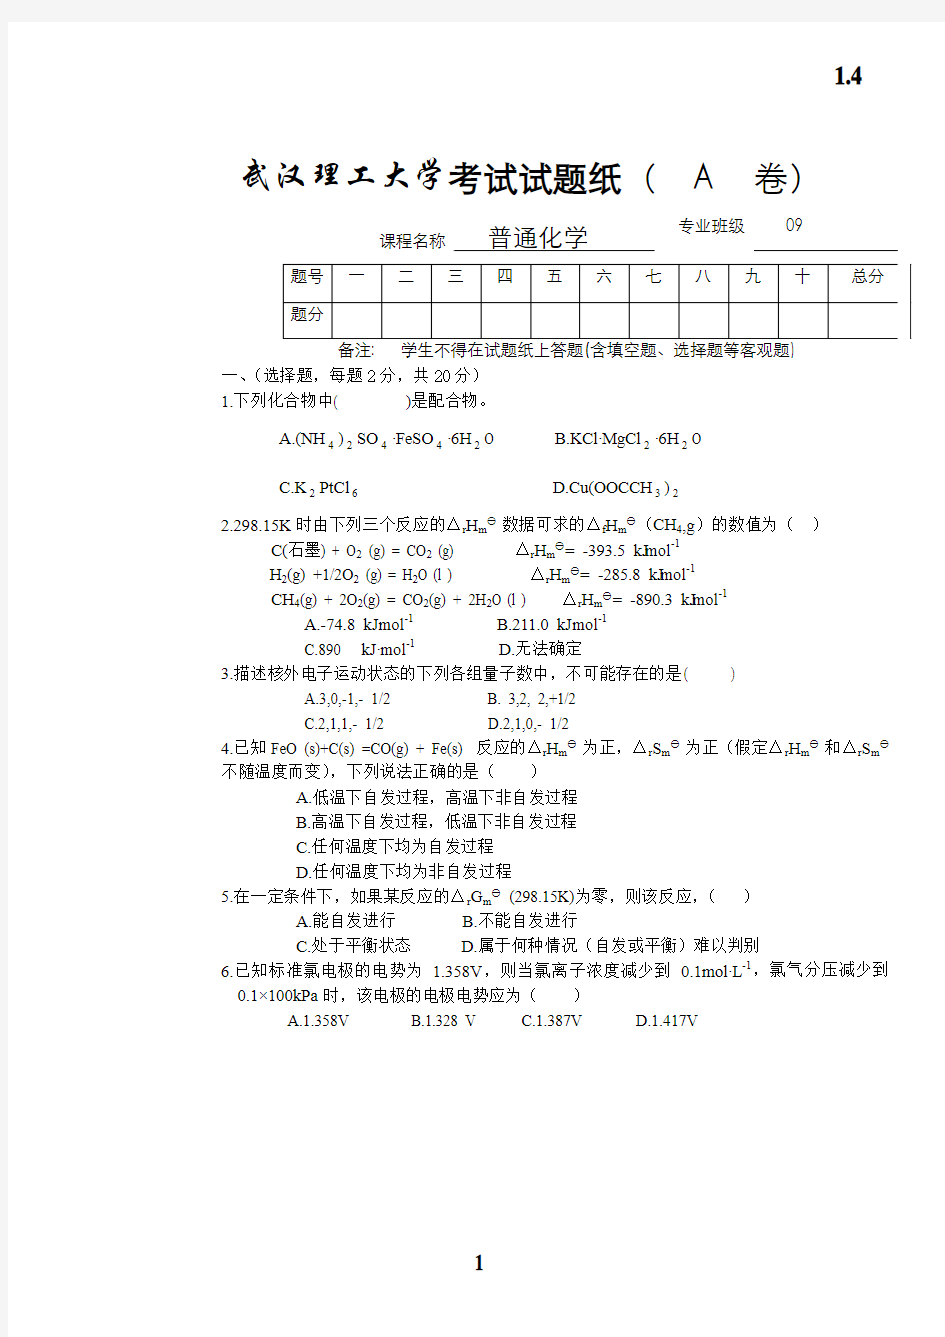 武汉理工大学普通化学09 11级考试试卷